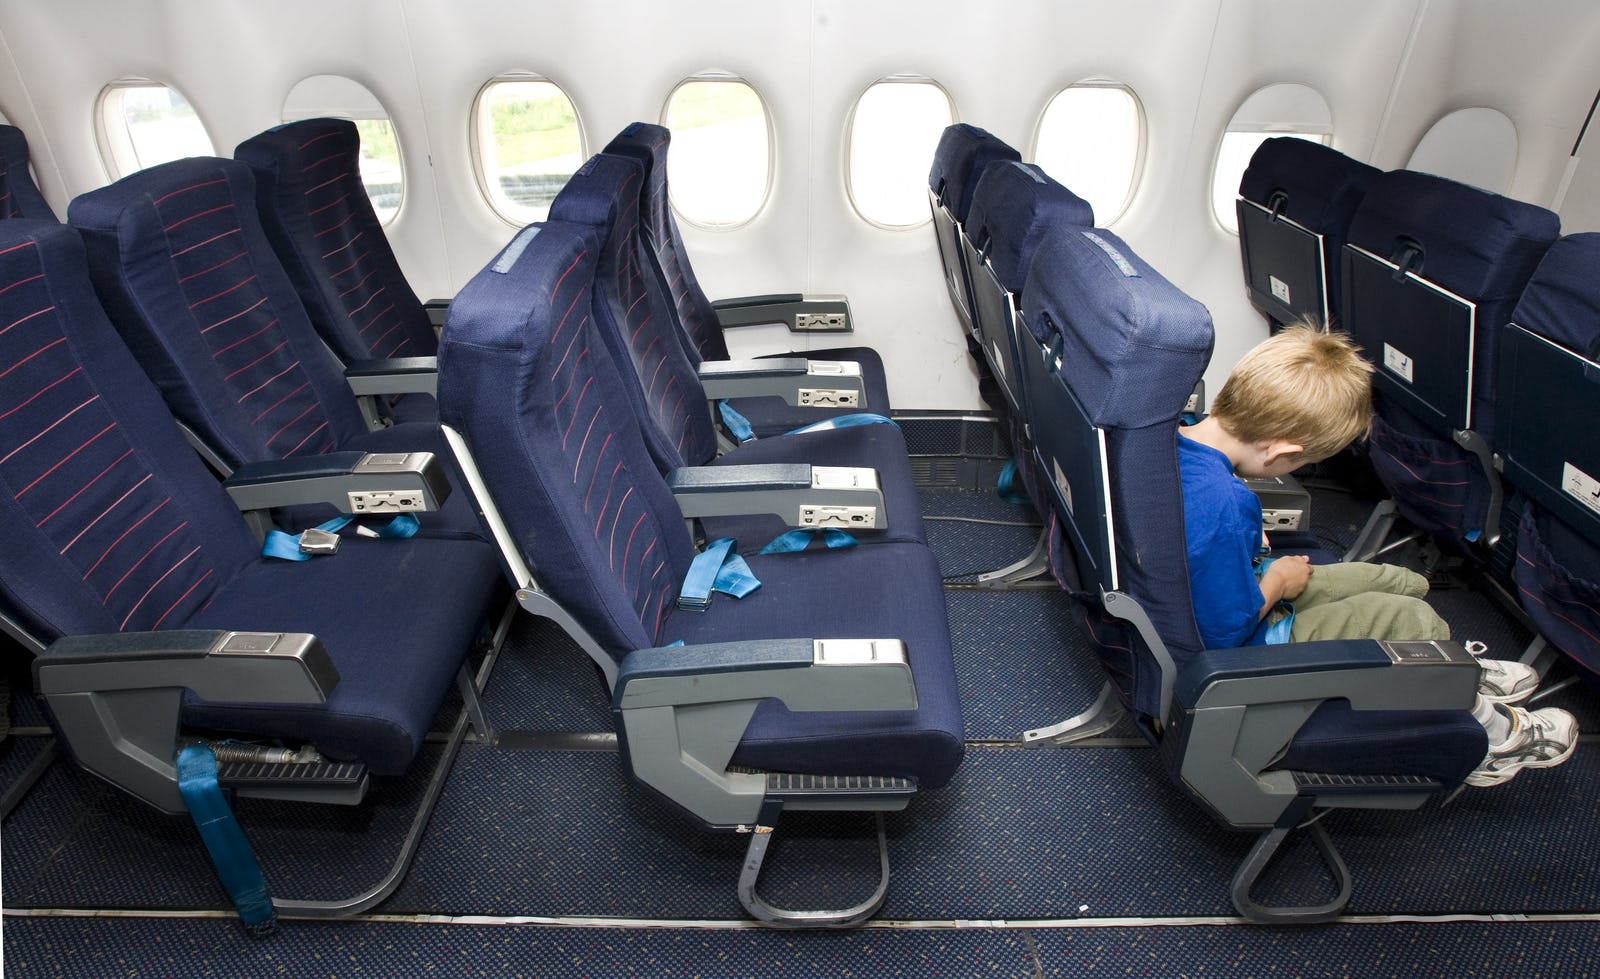 Nu ook kindvrije zones in vliegtuigen